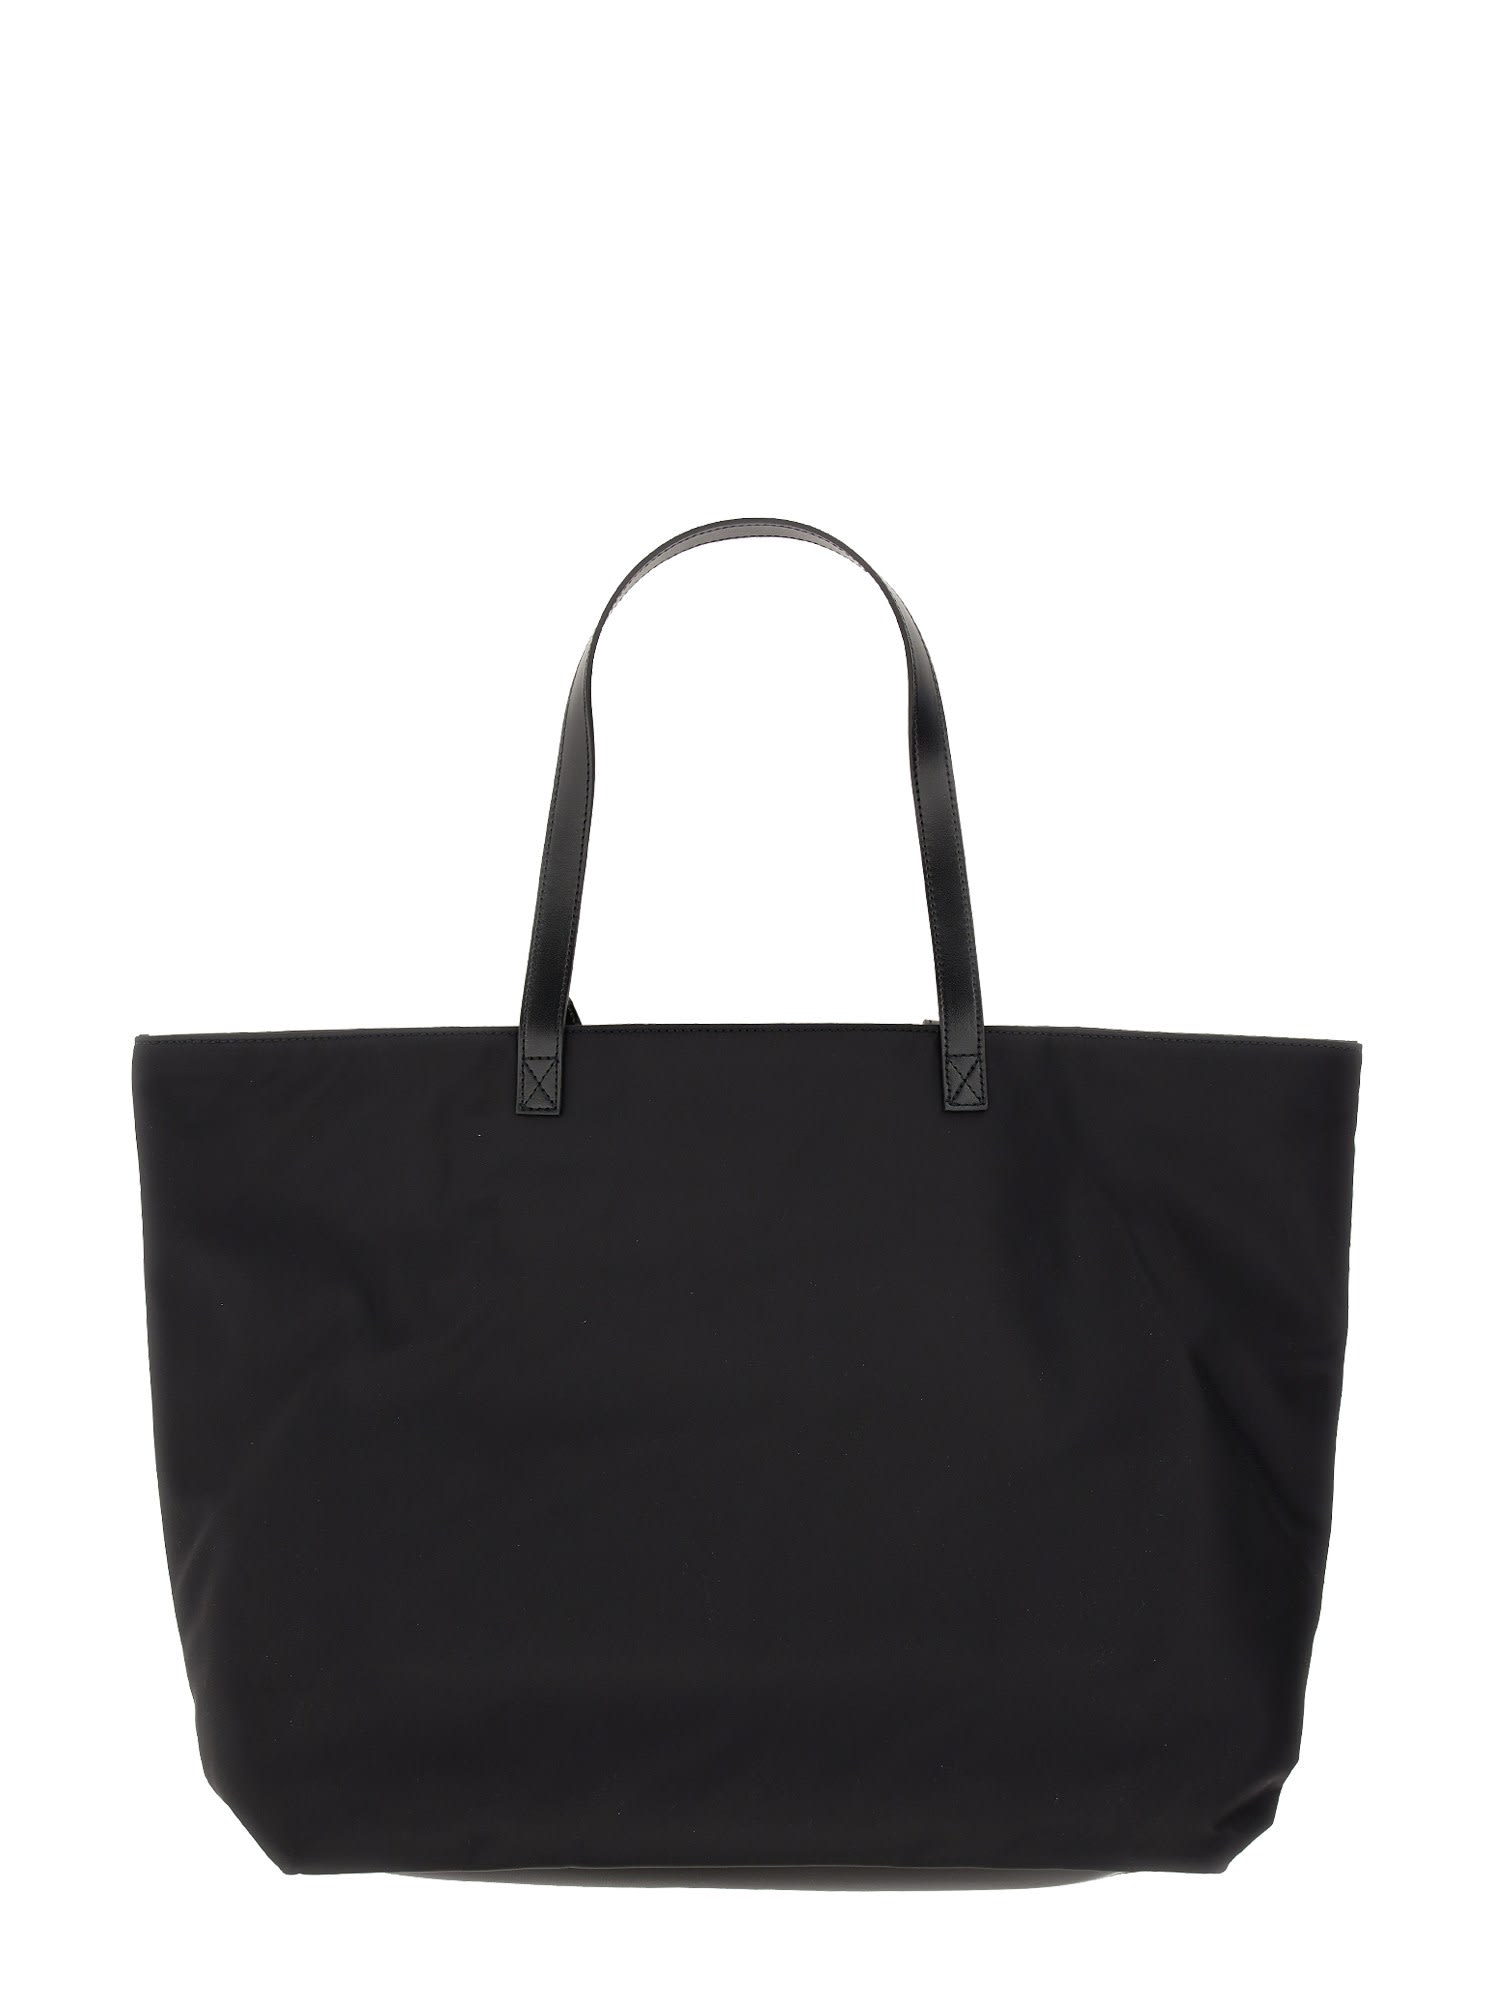 Shop Dsquared2 Be Icon Shopper Bag